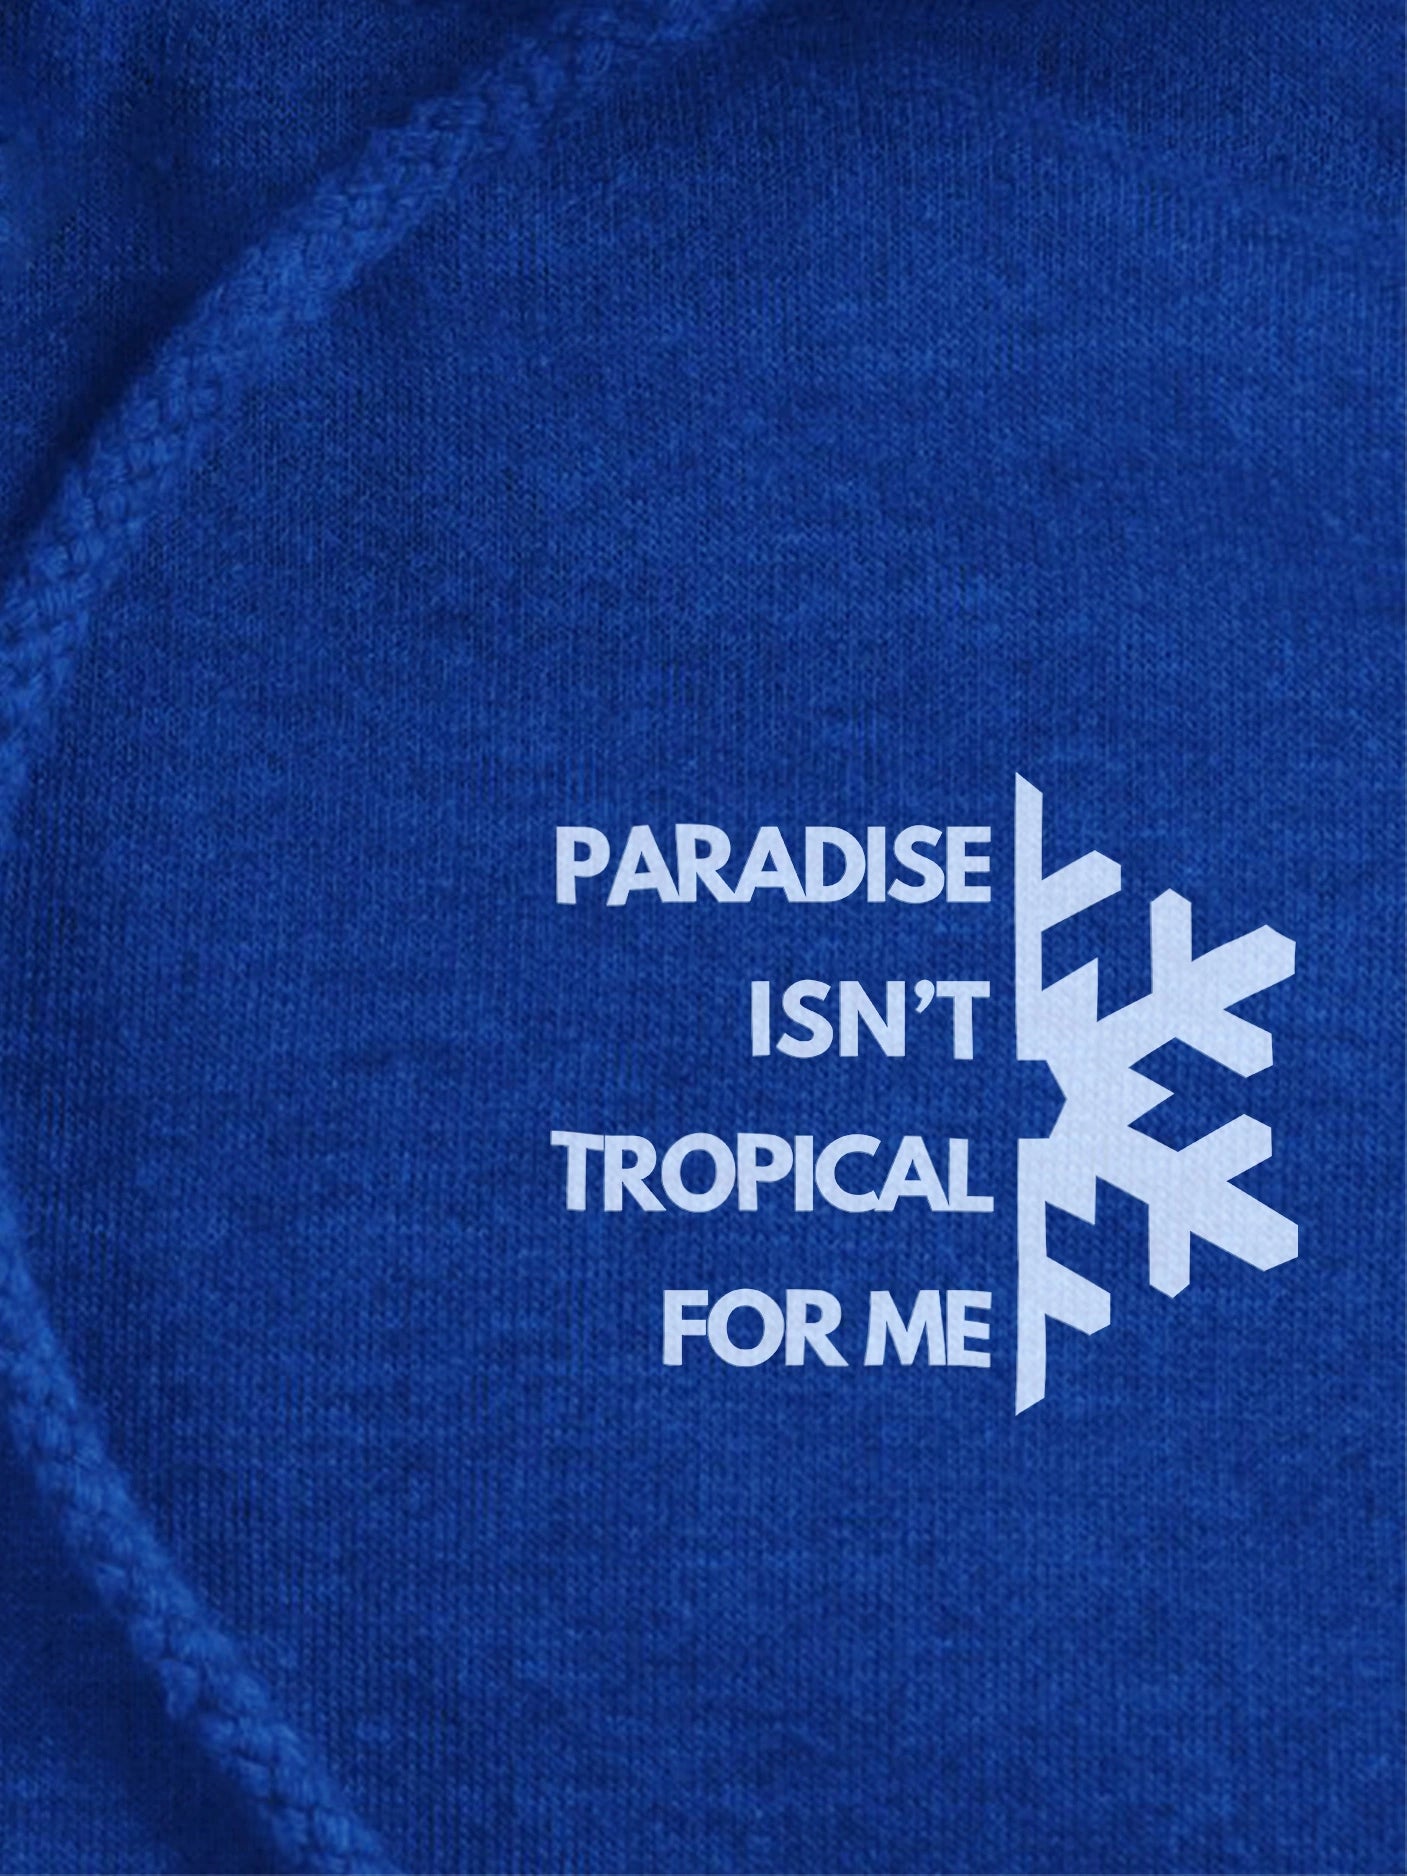 Paradise isn't tropical - Premium Unisex Pullover Hoodie